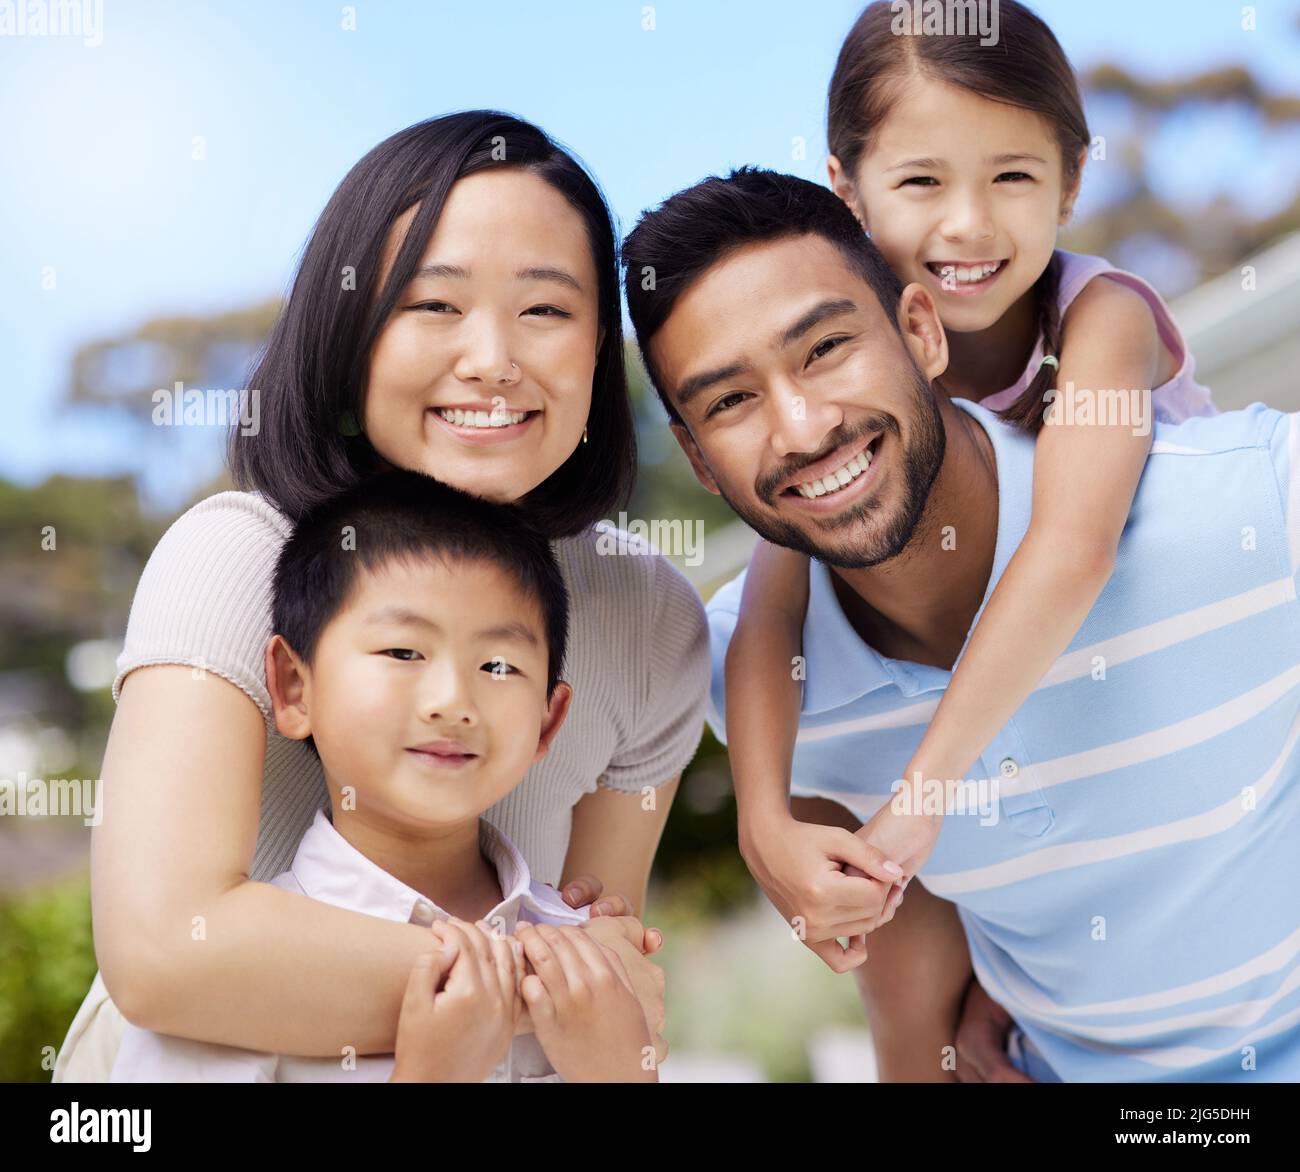 Das ist wahres Glück. Aufnahme einer jungen Familie, die zu Hause in ihrem Garten Zeit zusammen verbringt. Stockfoto